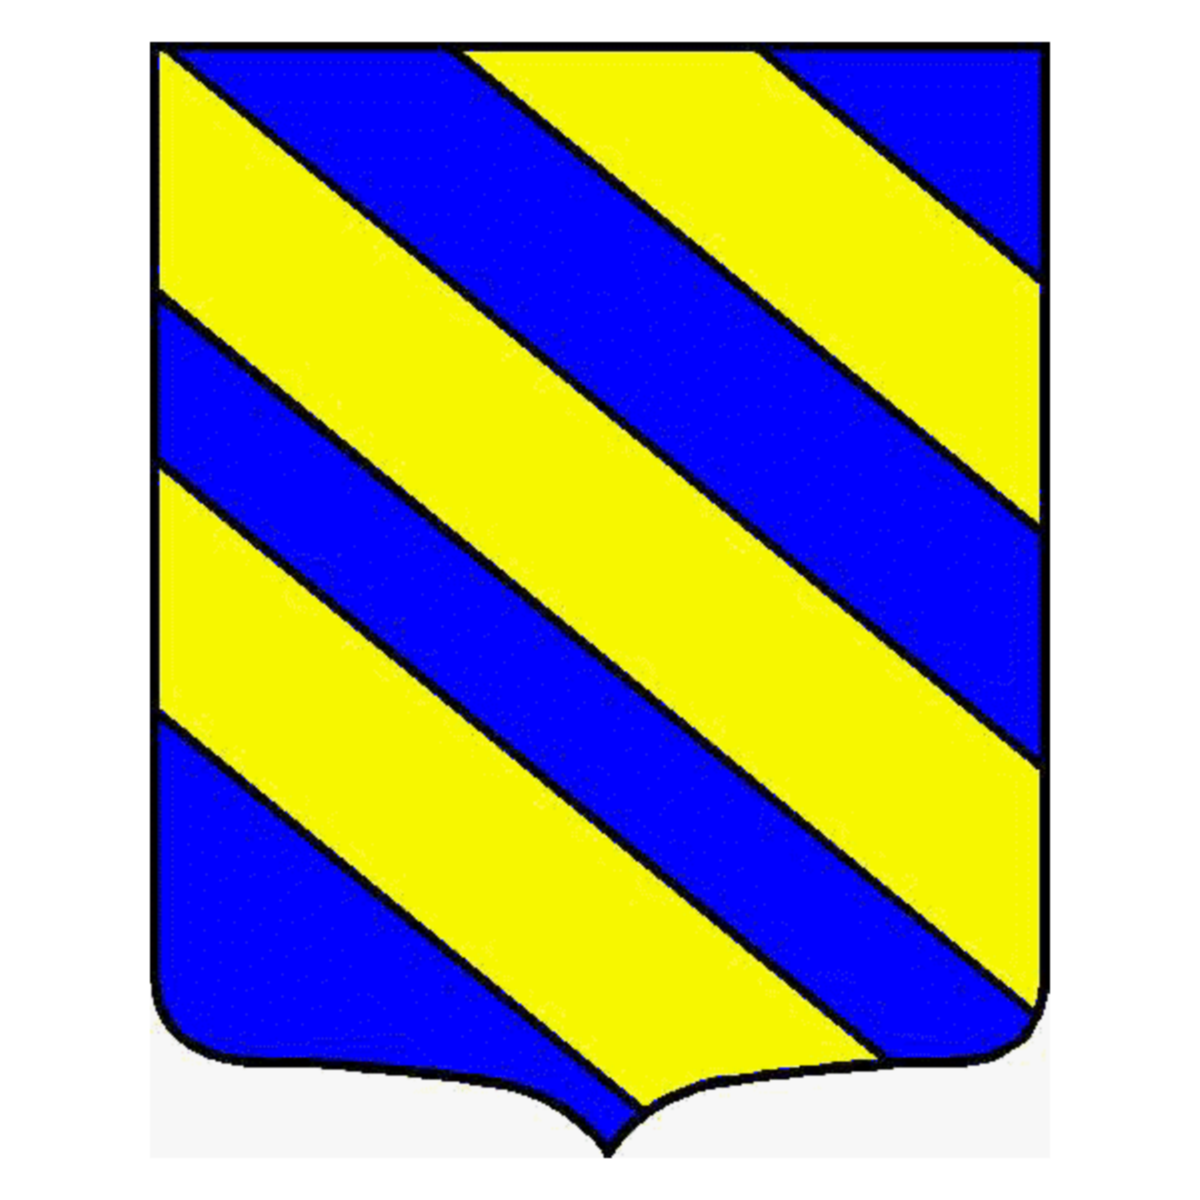 Wappen der Familie Clerici